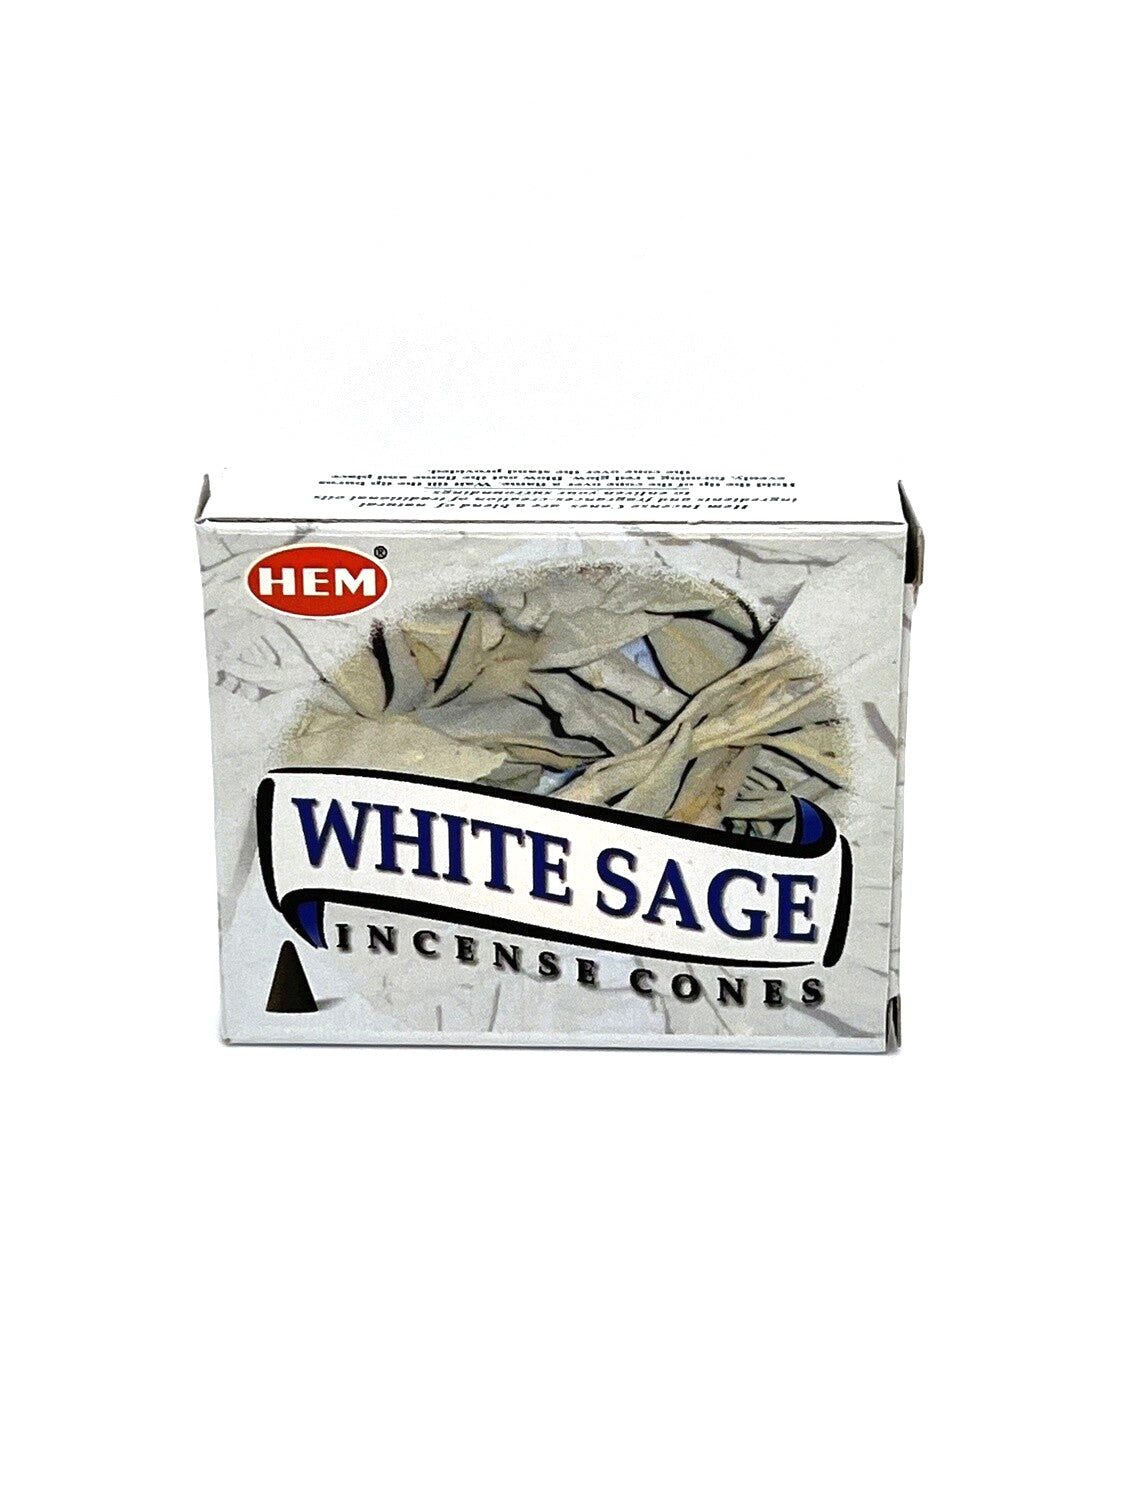 Hem White Sage Incense Cones